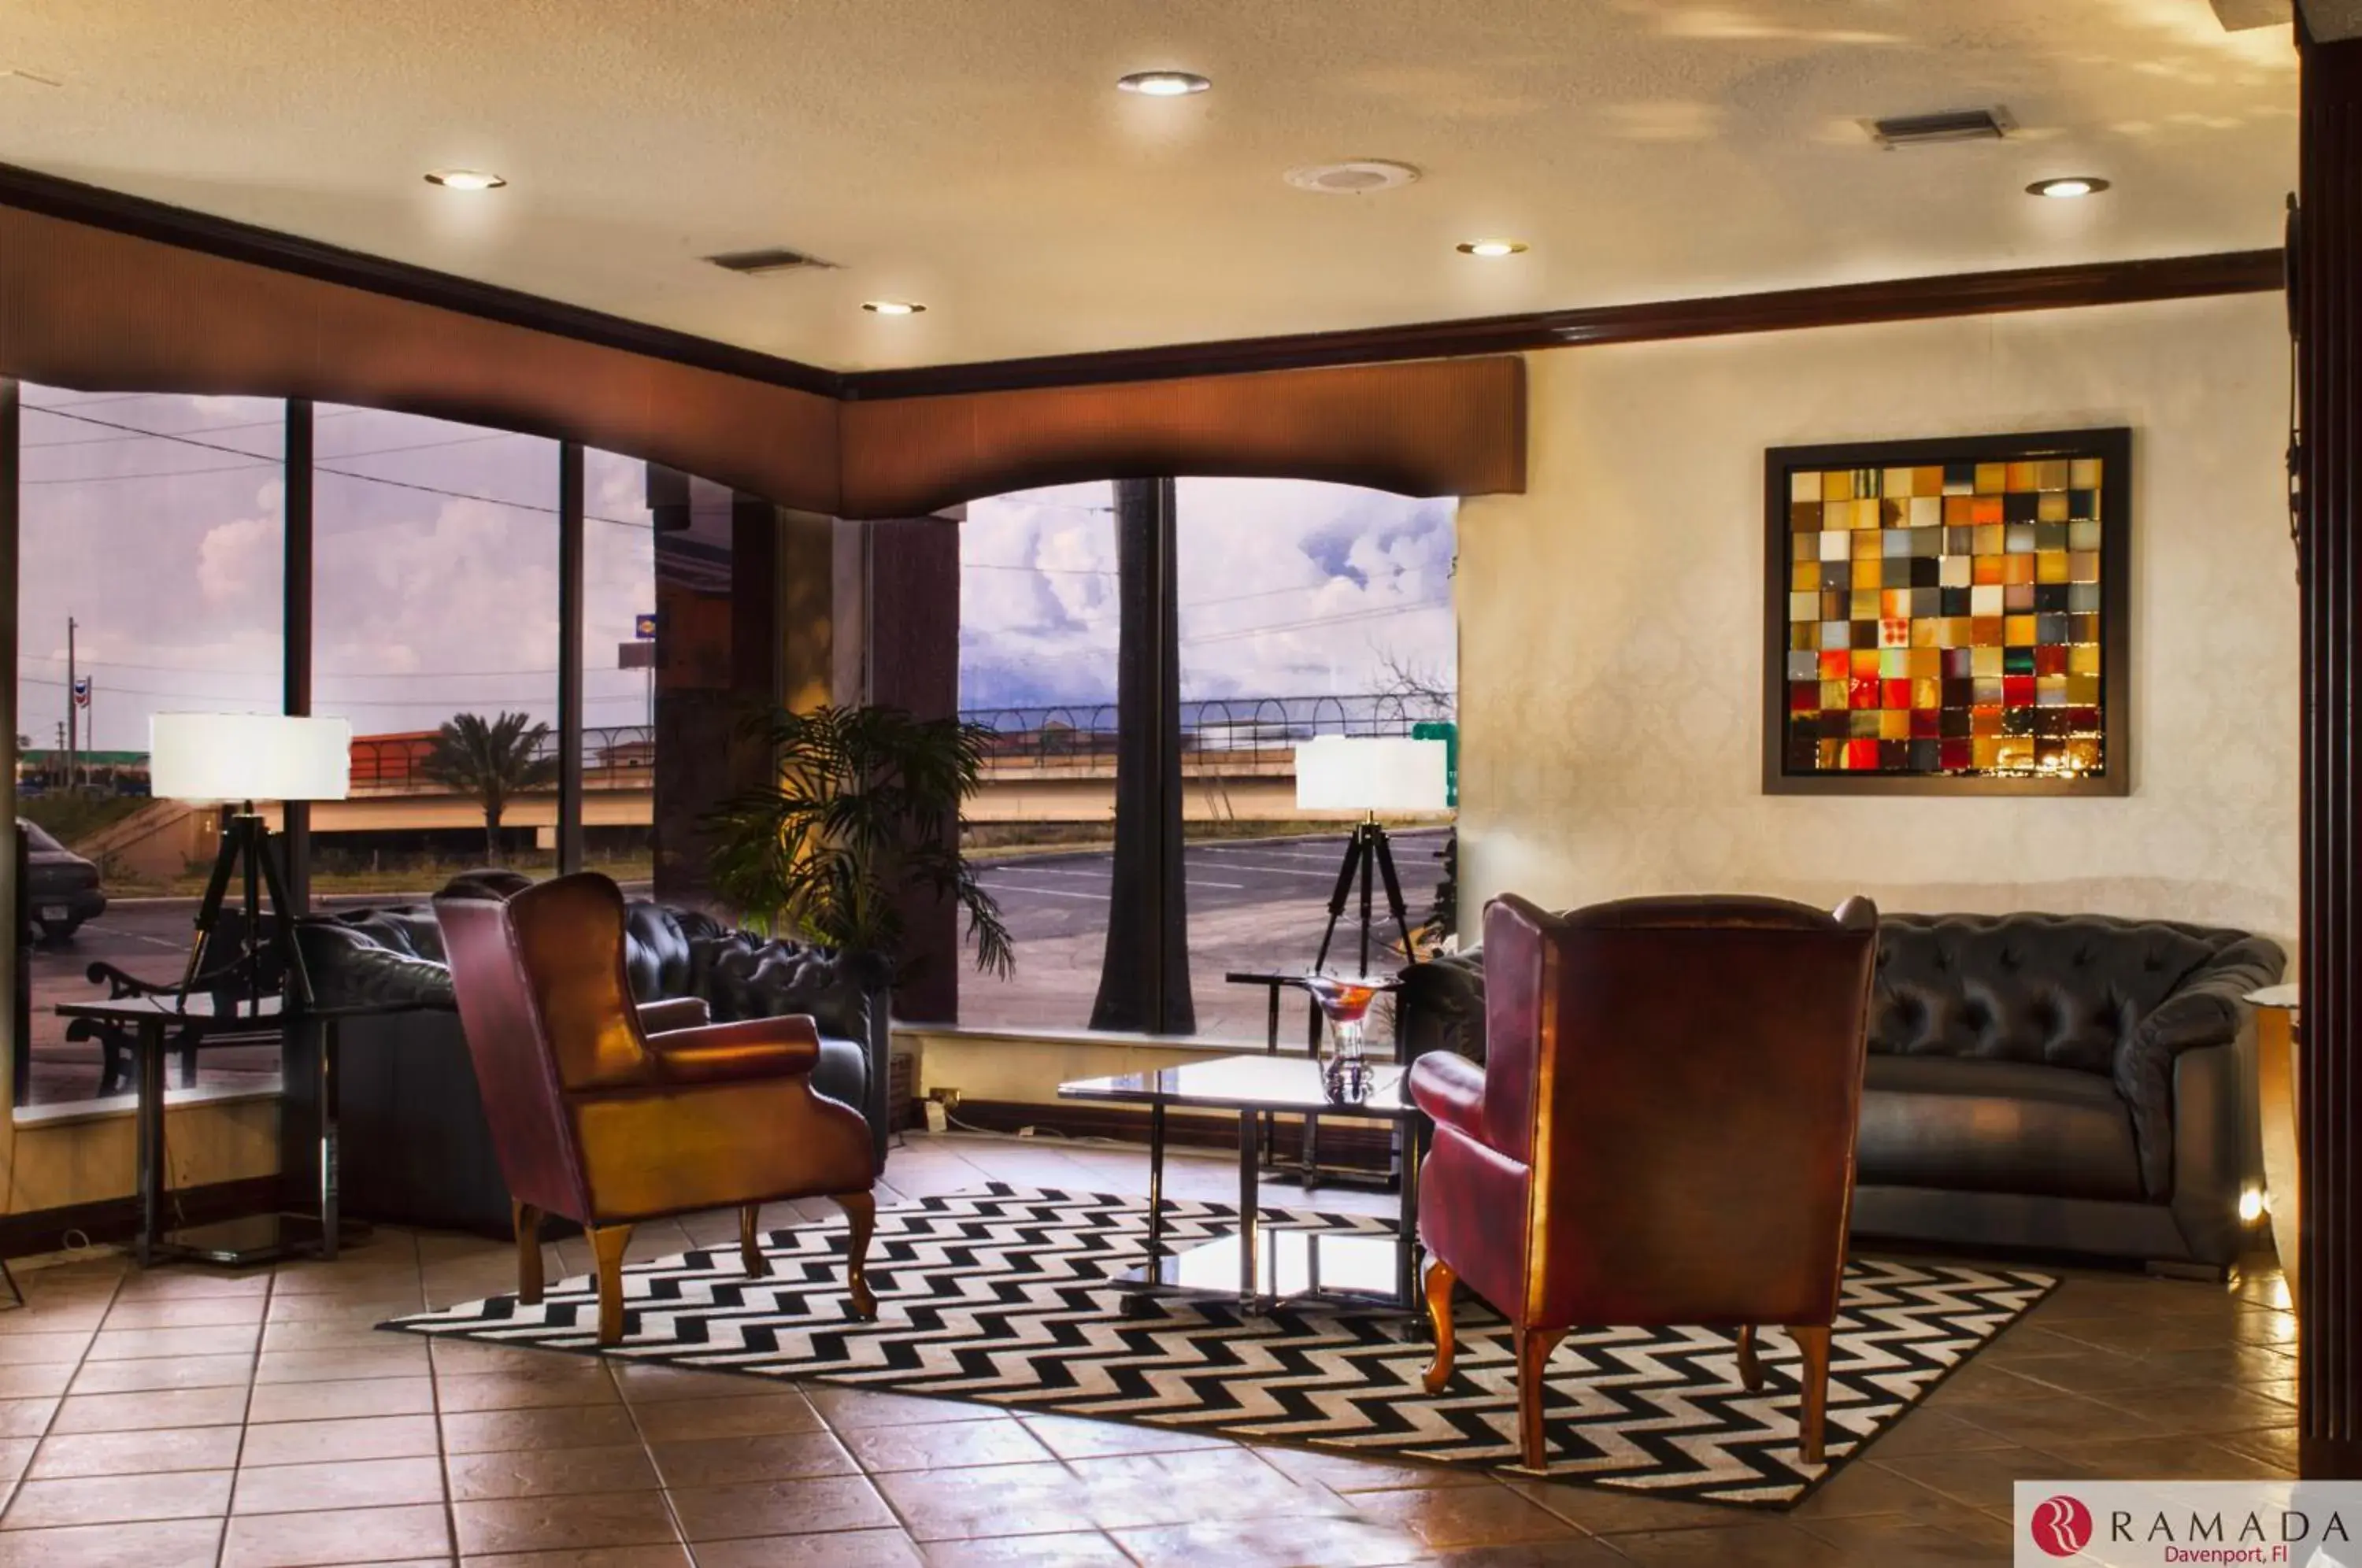 Lobby or reception in Ramada by Wyndham Davenport Orlando South